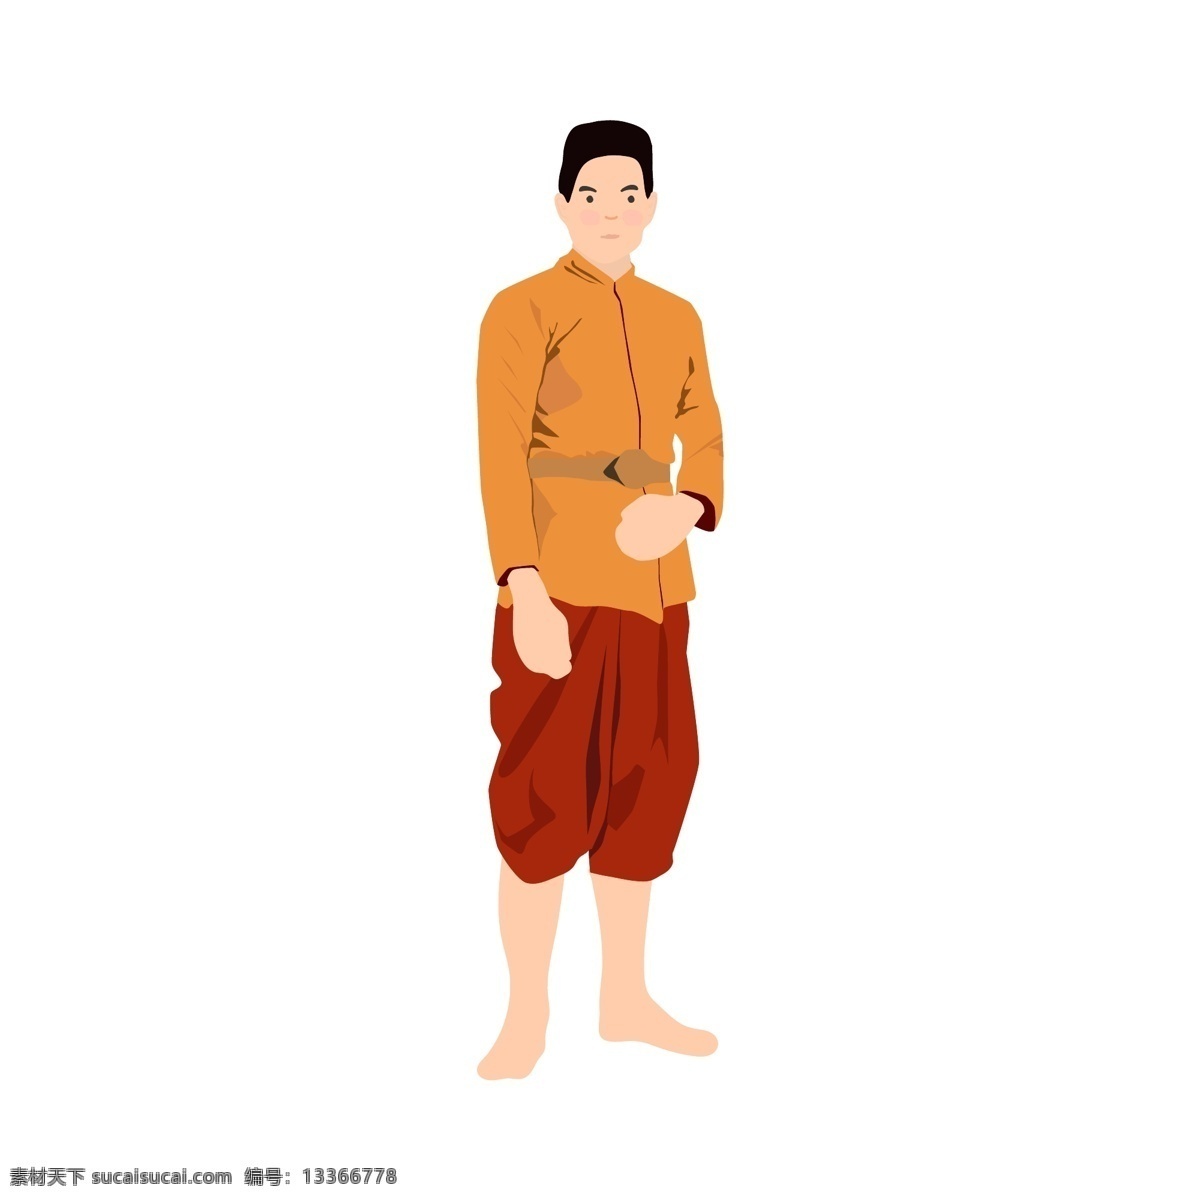 泰国的服装 一个 男人 条 裙子 橙色 衬衫 红色 裤子 泰国 菜